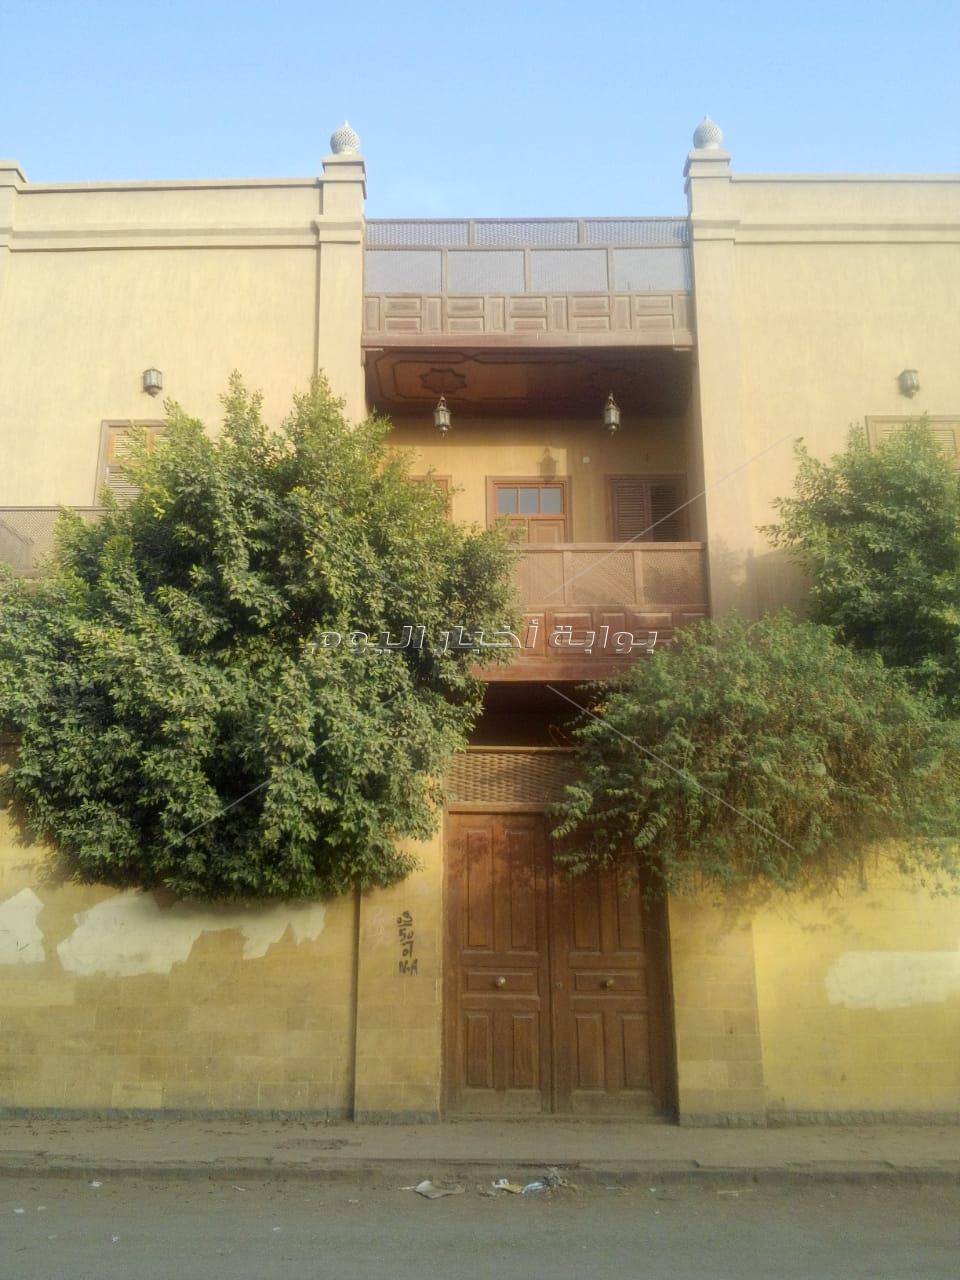 بيت الشيخ رفاعة الطهطاوي	